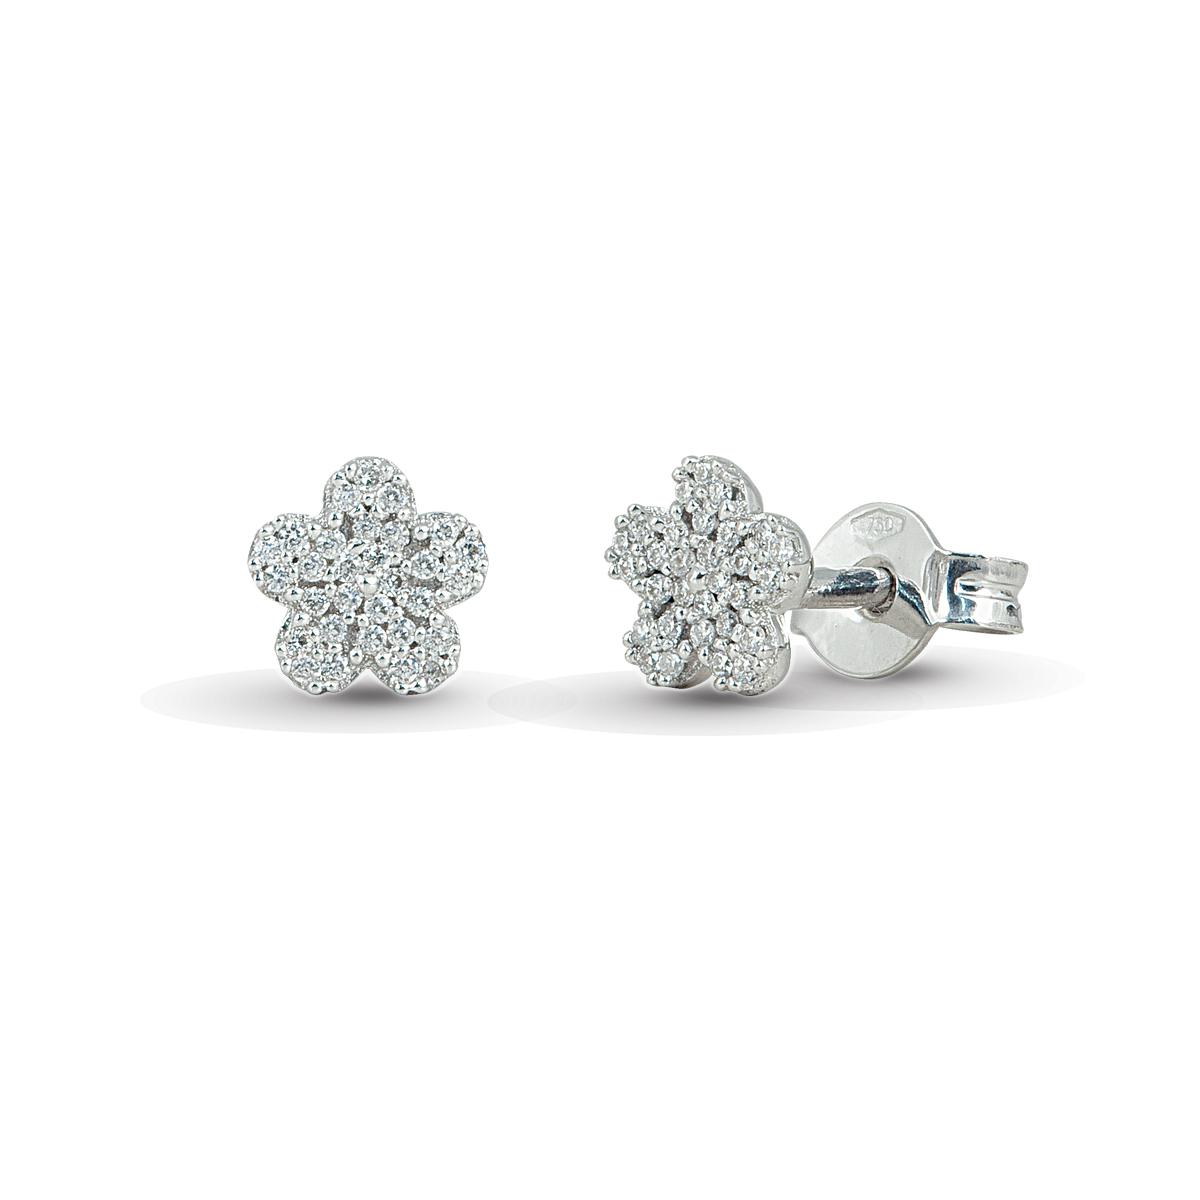 18 kt white gold flower earrings with pavé diamonds - OD286-LB